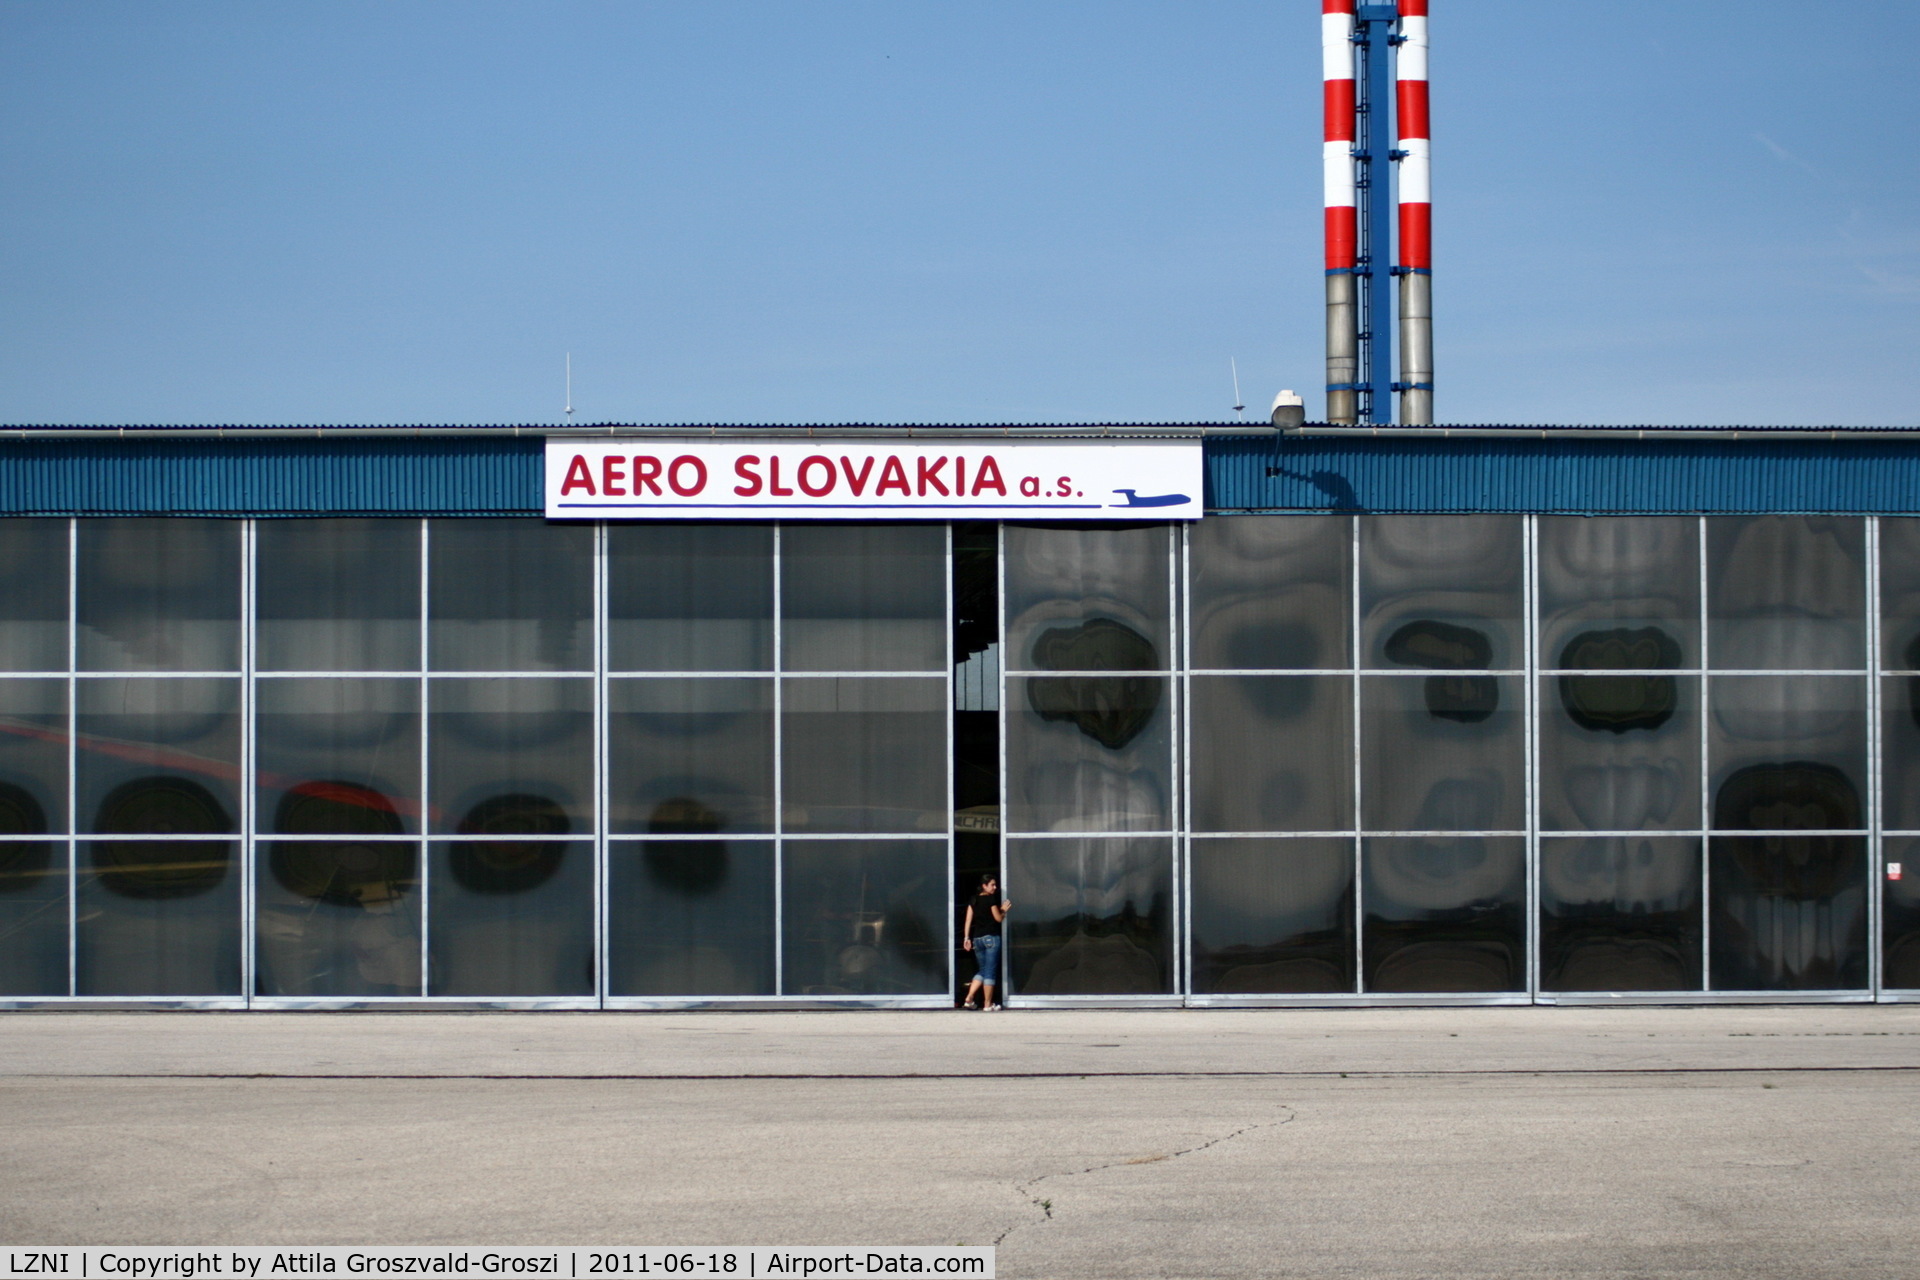 LZNI Airport - Nitra Janikovce Airport - Slovakia (Slovak Republik) SK - Aero Slovakia a.s. hangar